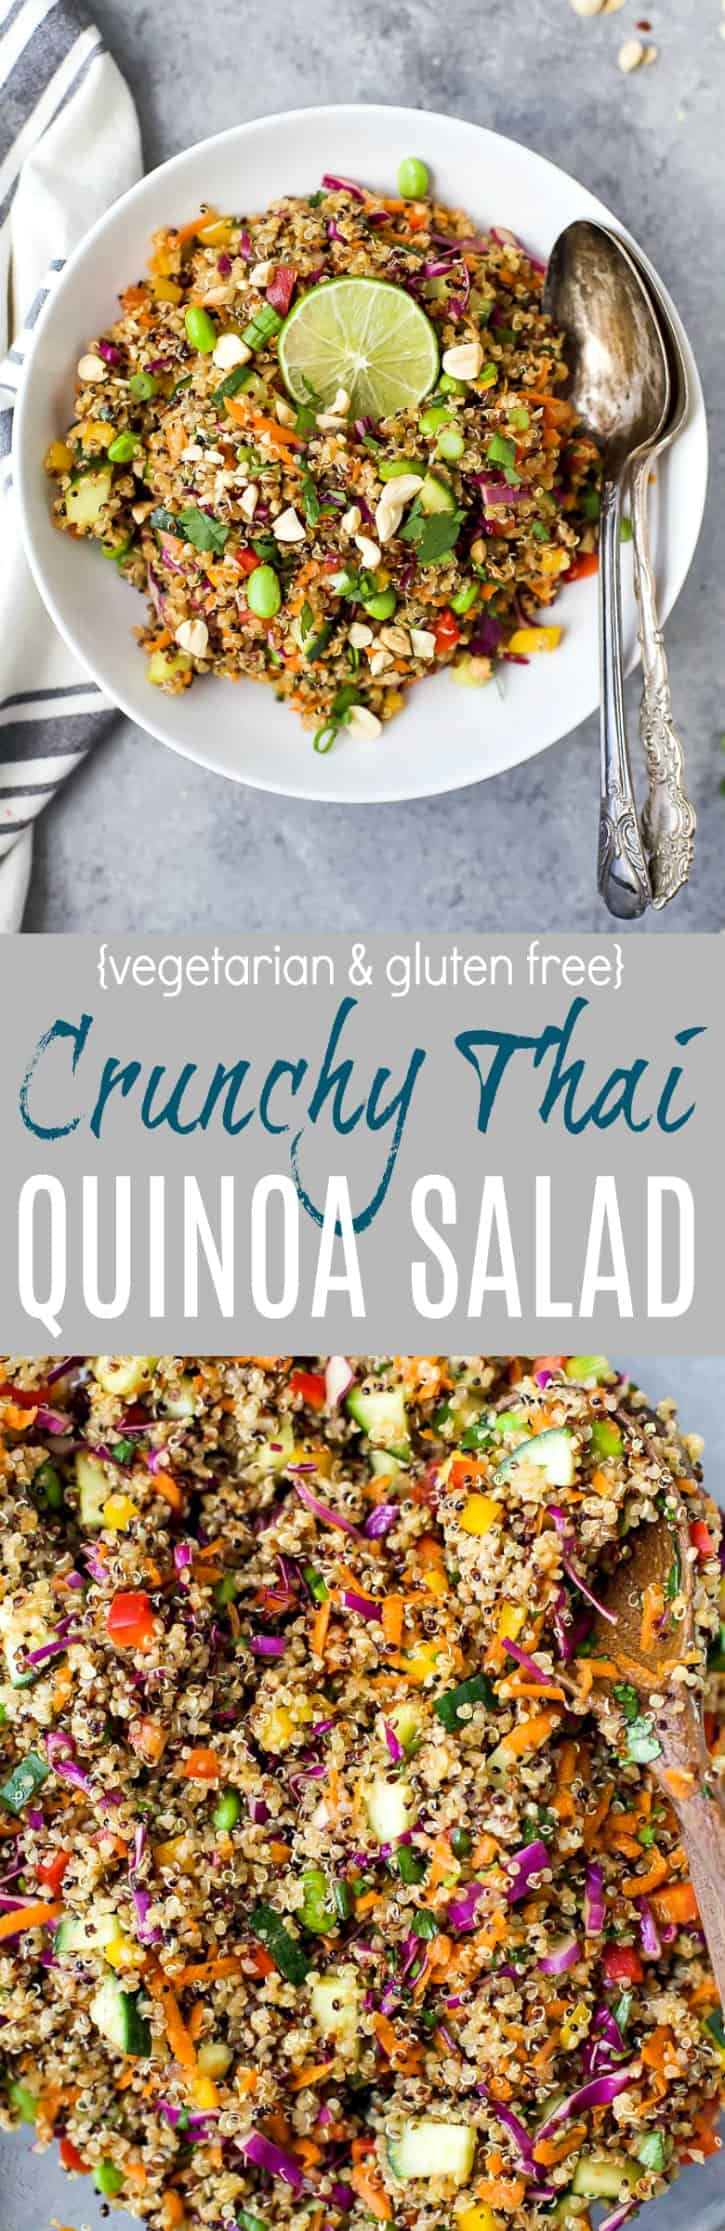 Crunchy Thai Quinoa Salad recipe collage